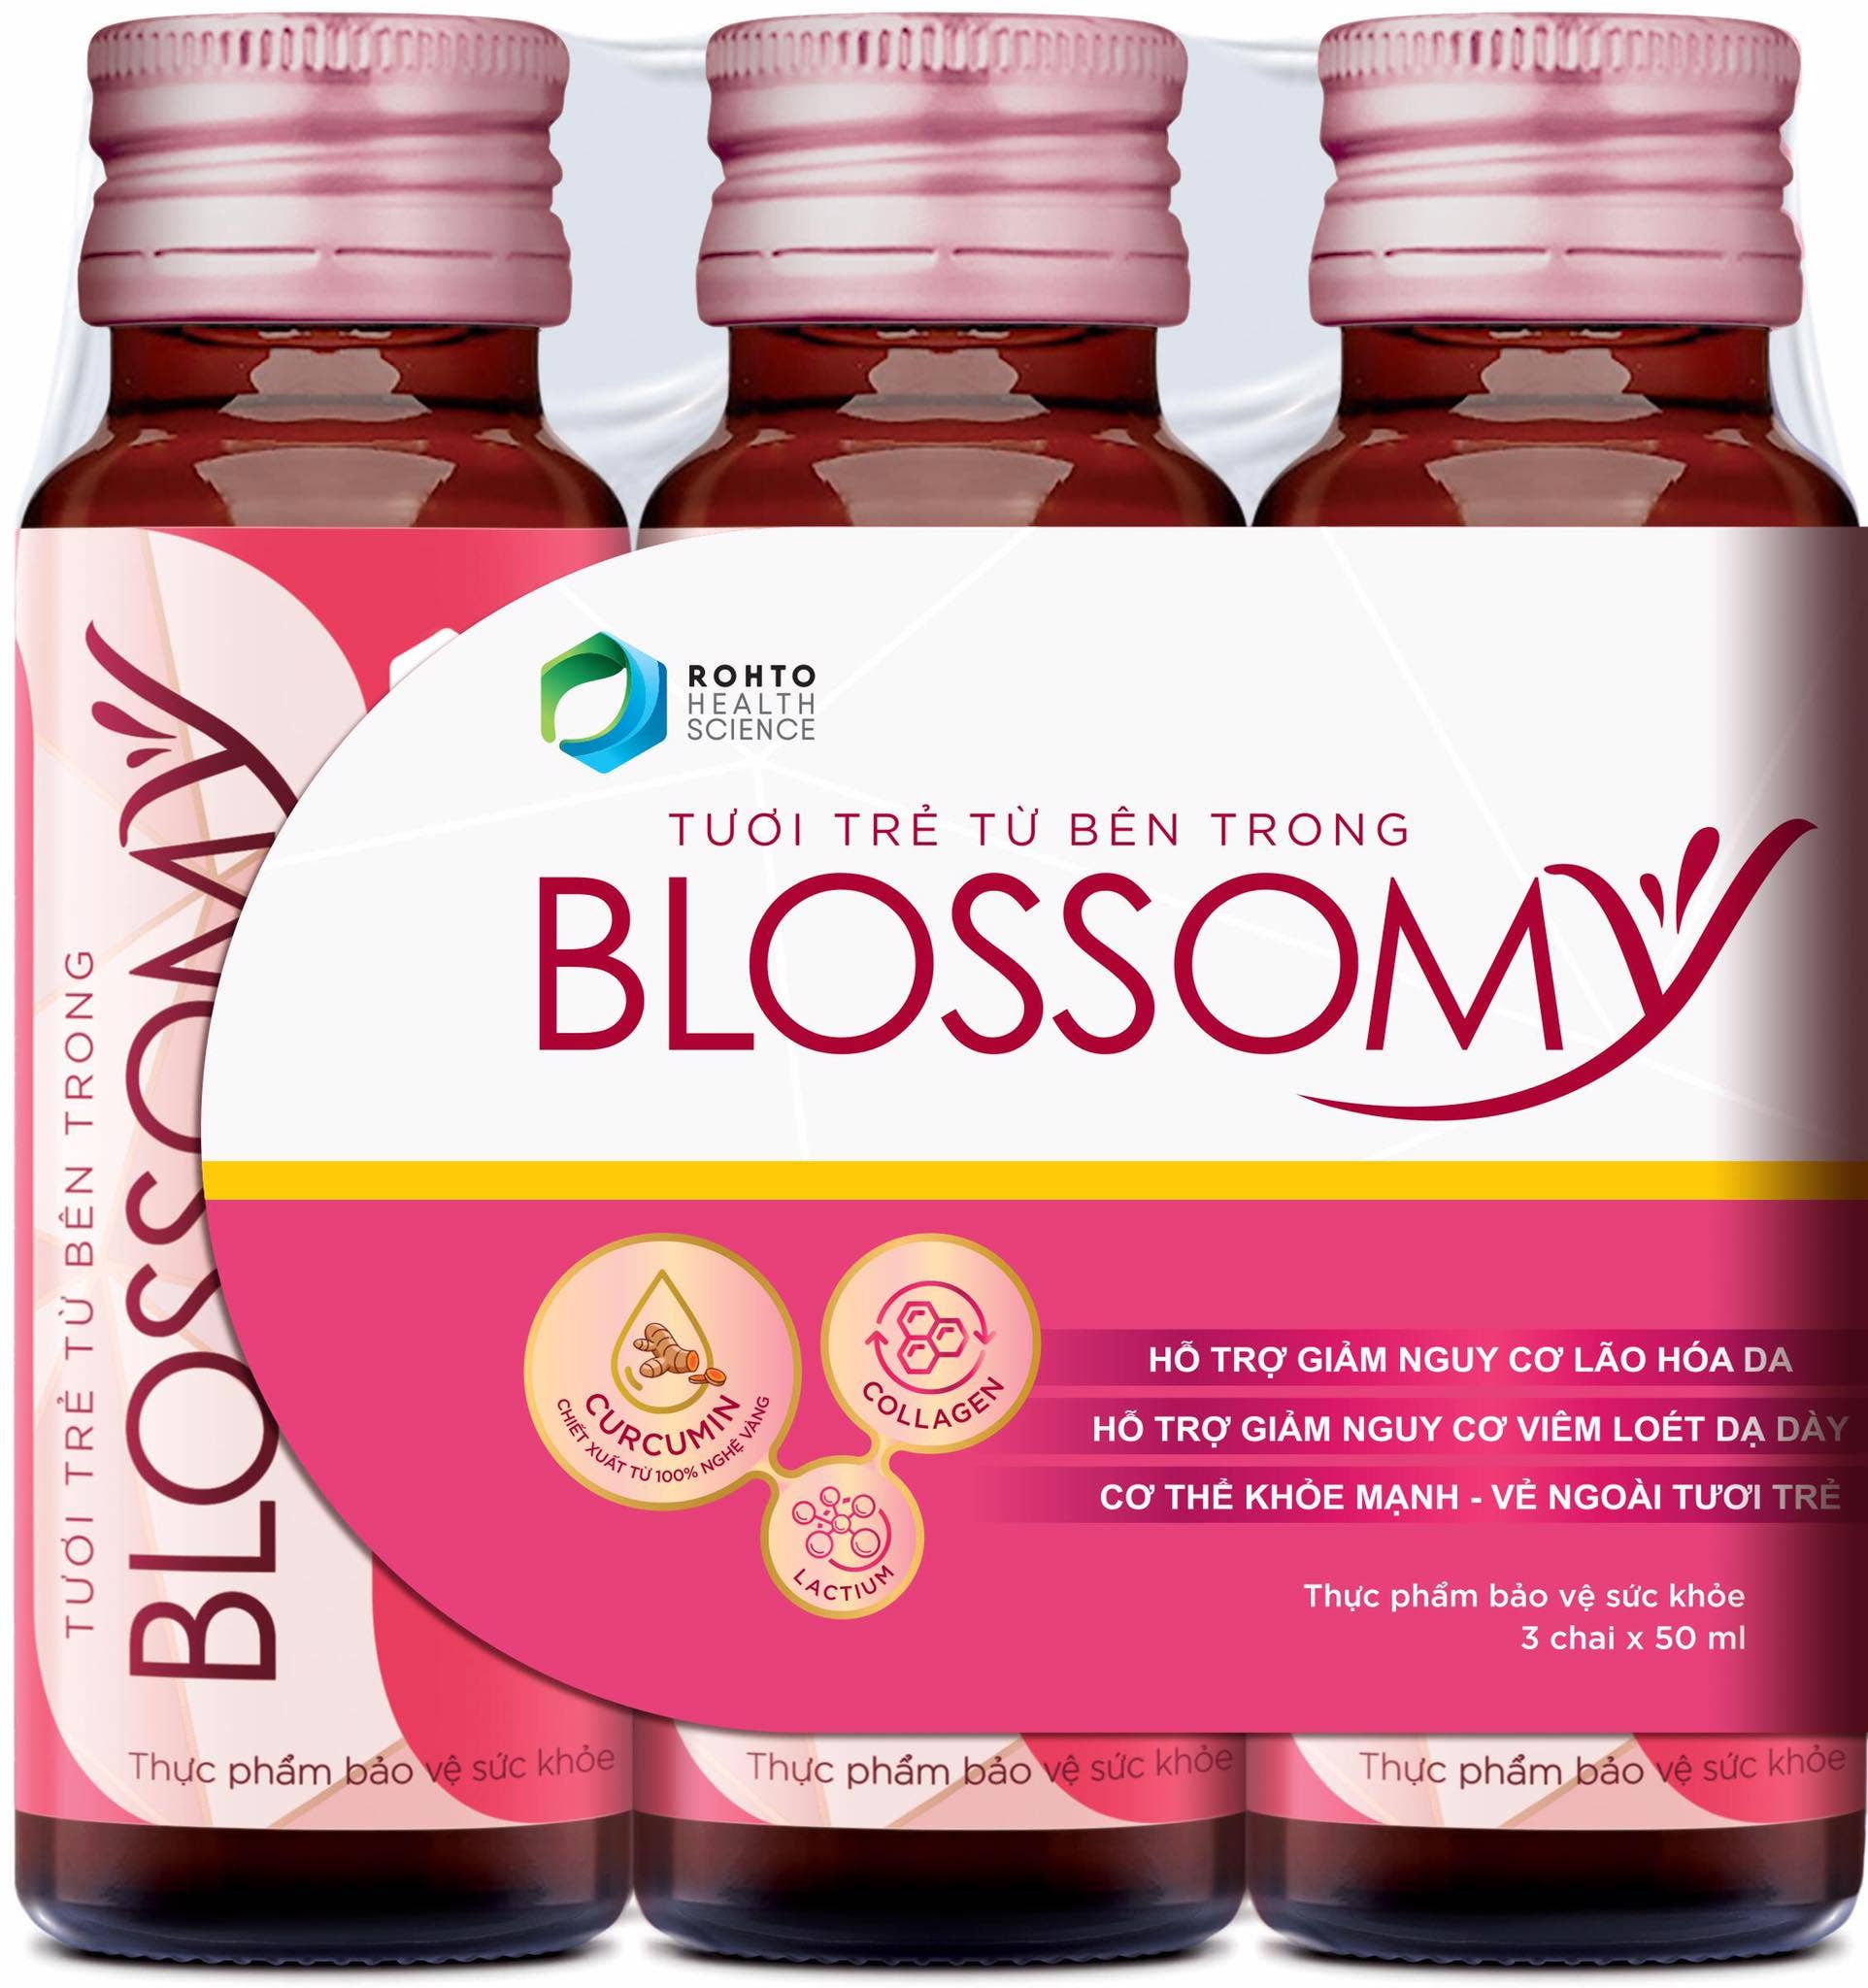 Lưu ý cách sử dụng thực phẩm bảo vệ sức khỏe Blossomy